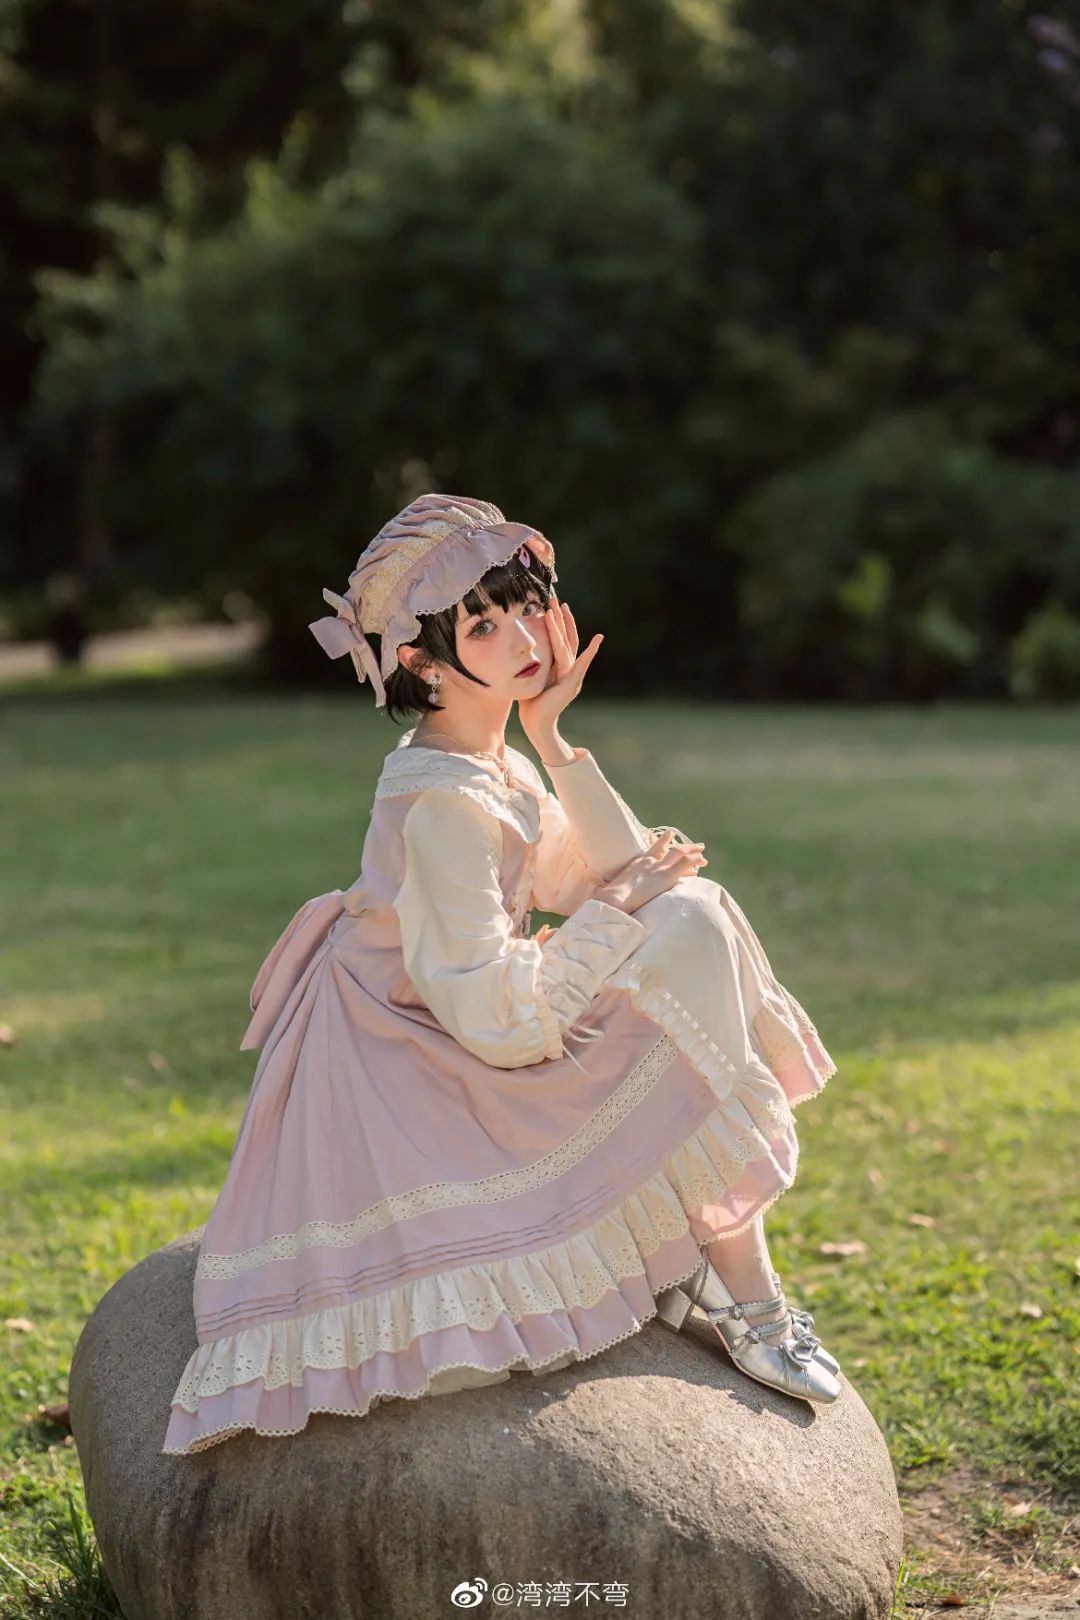 妹子摄影 – Lolita少女真的好小只，像洋娃娃（@湾湾不弯）_图片 No.8